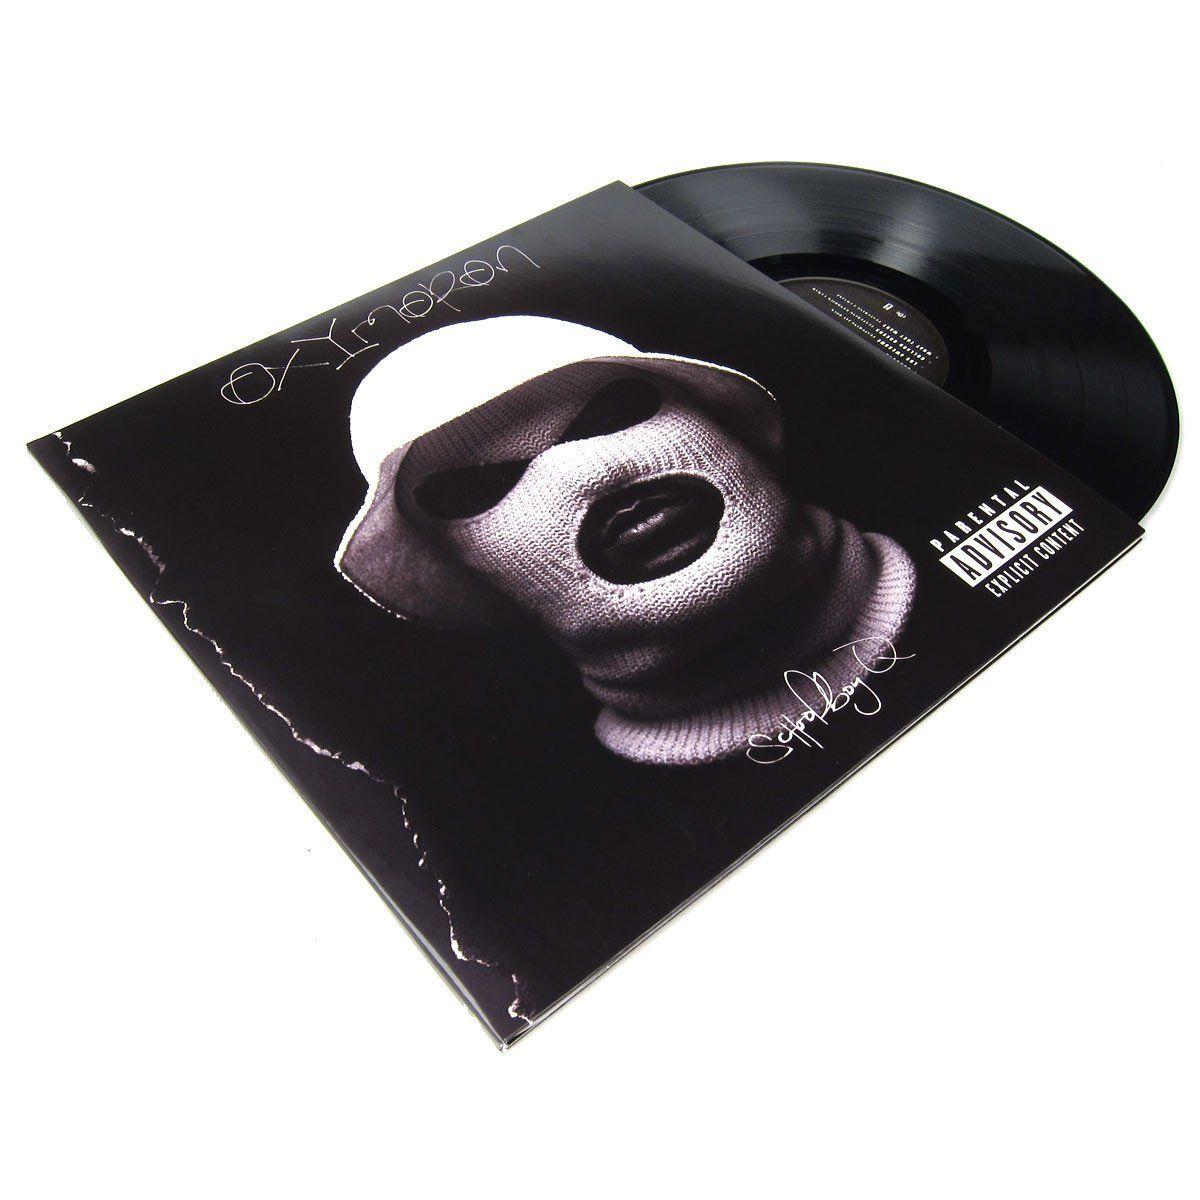 Schoolboy Q Logo - Schoolboy Q: Oxymoron Deluxe Edition Vinyl 2LP